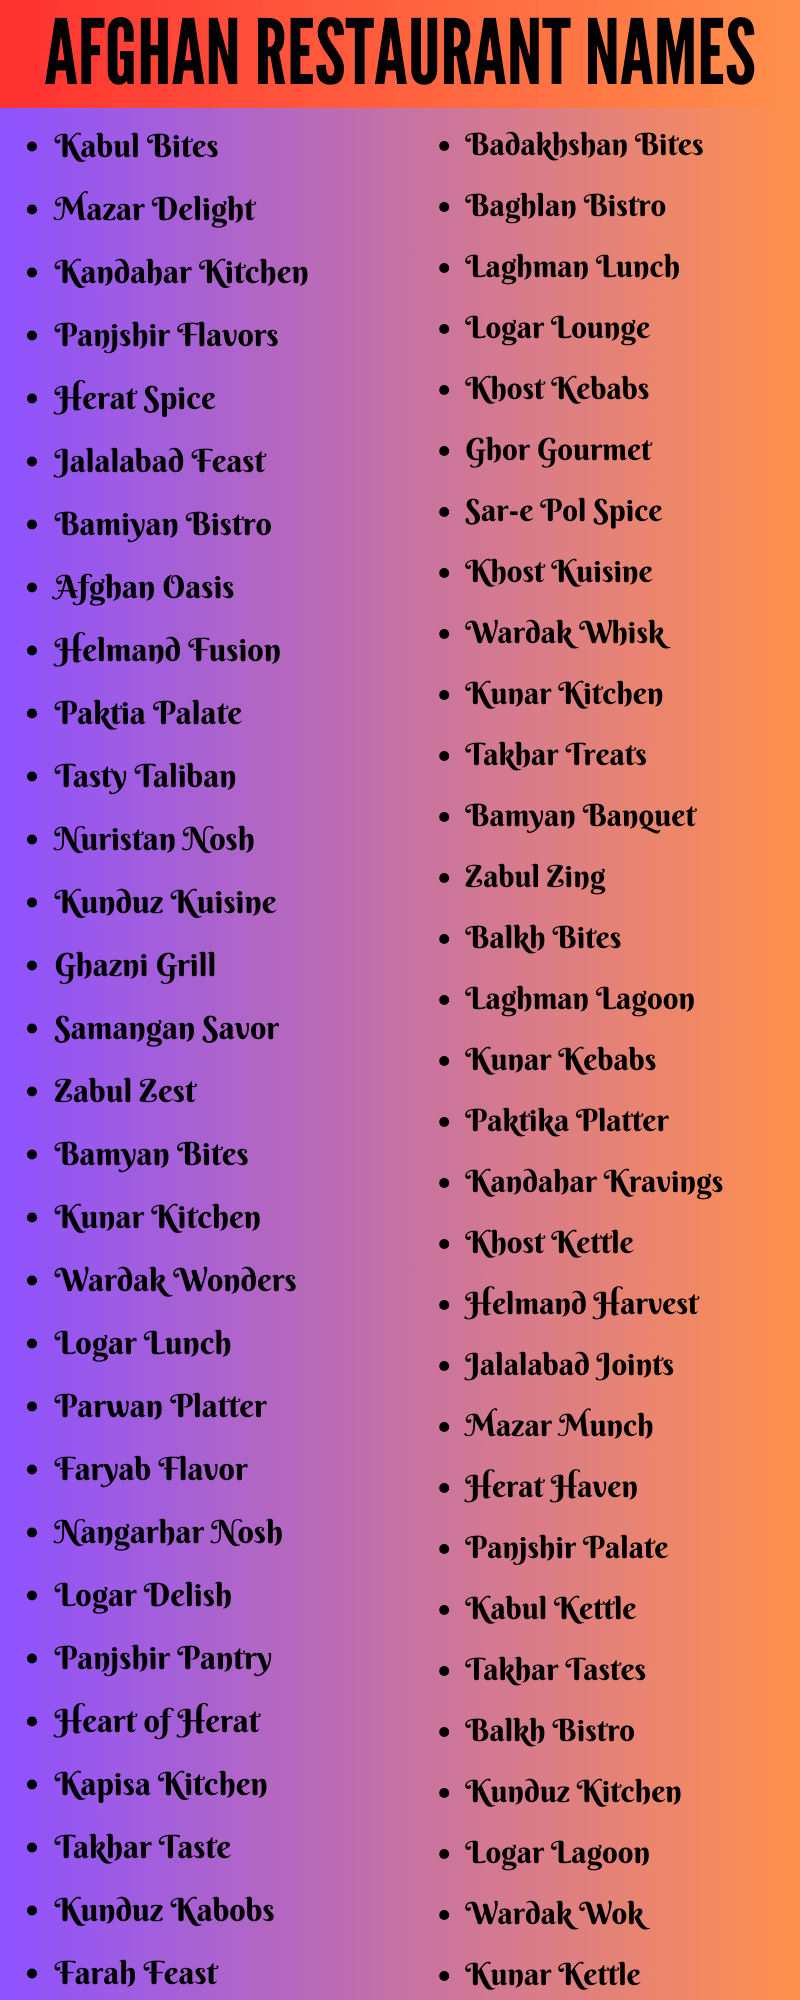 Afghan Restaurant Names